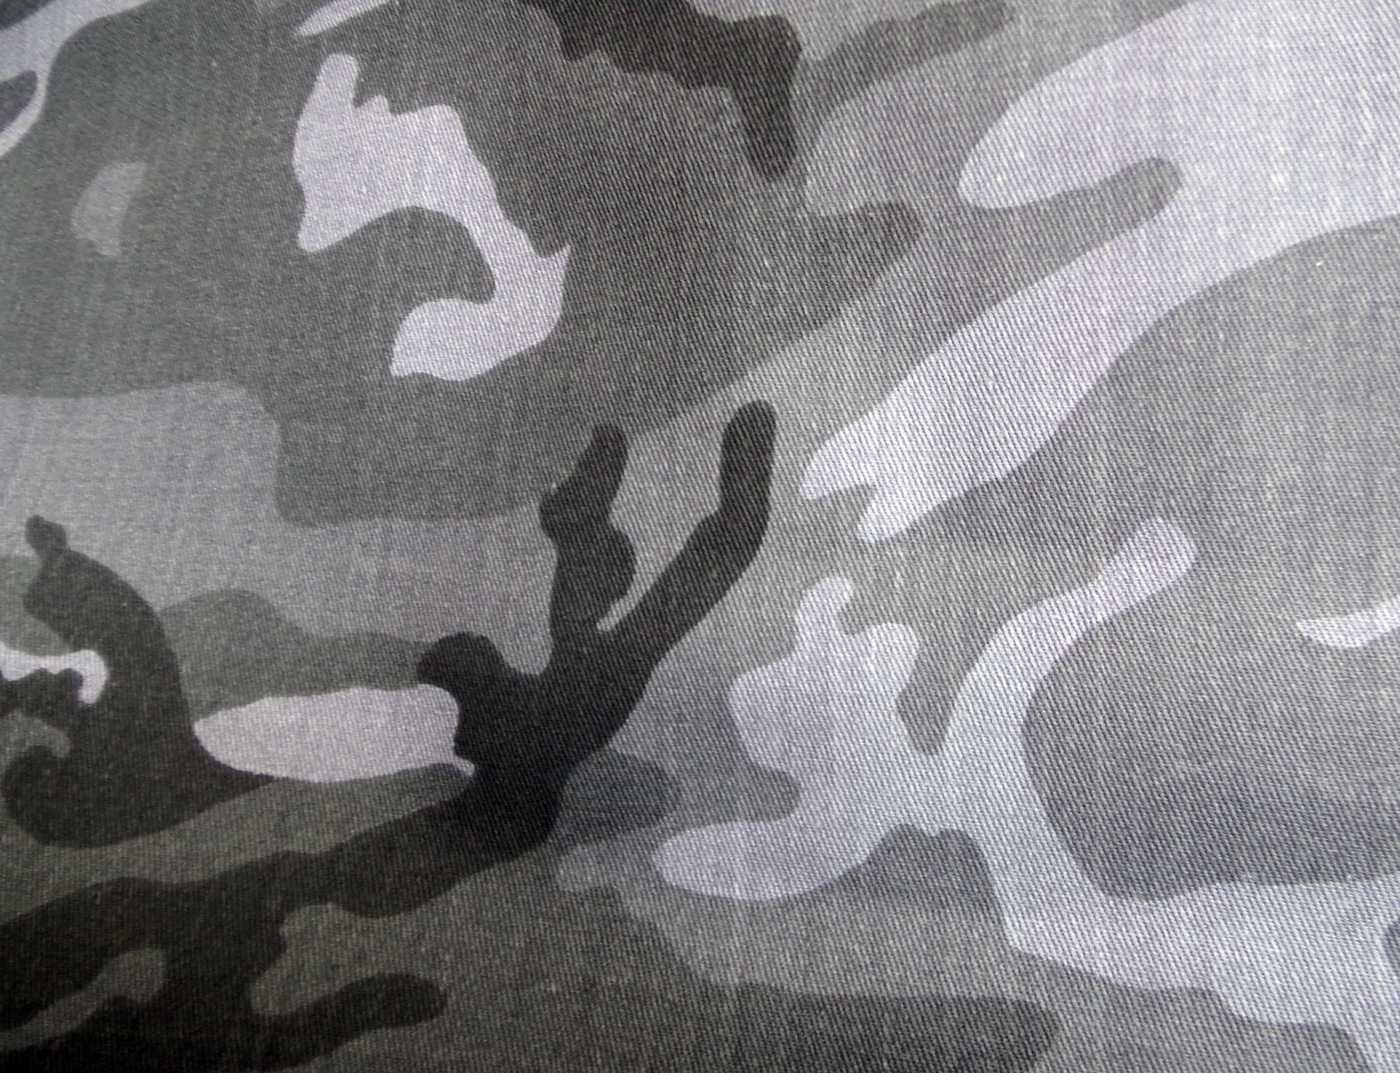 Tkanina MORO military, szara, 100% bawełna 2 metry bieżące